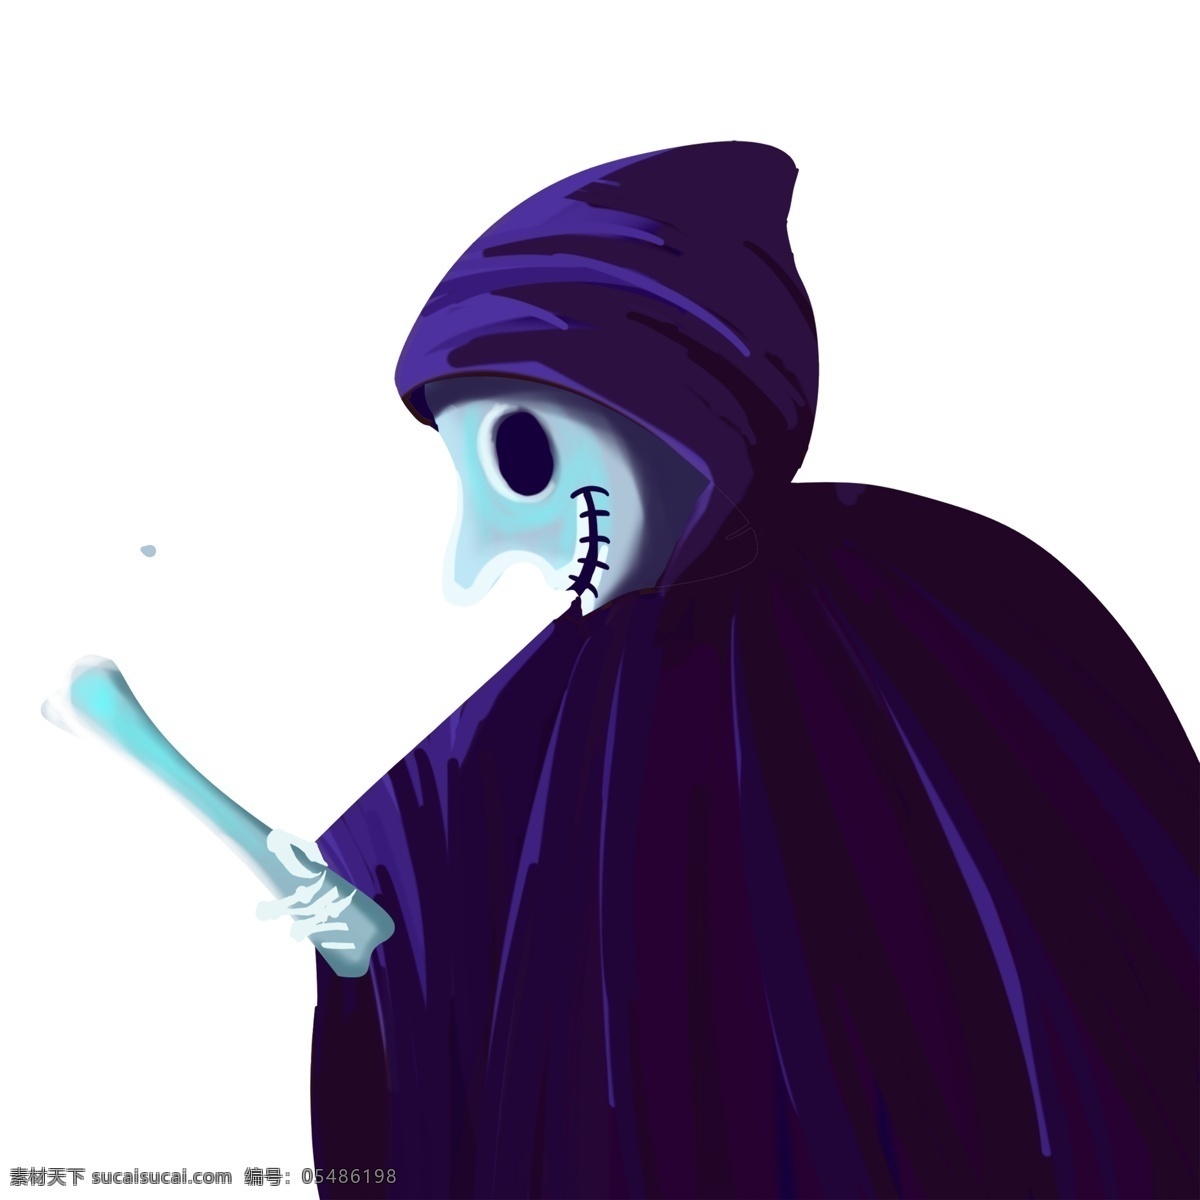 蓝色 手绘 巫师 人物 插画 角色 psd设计 骨头